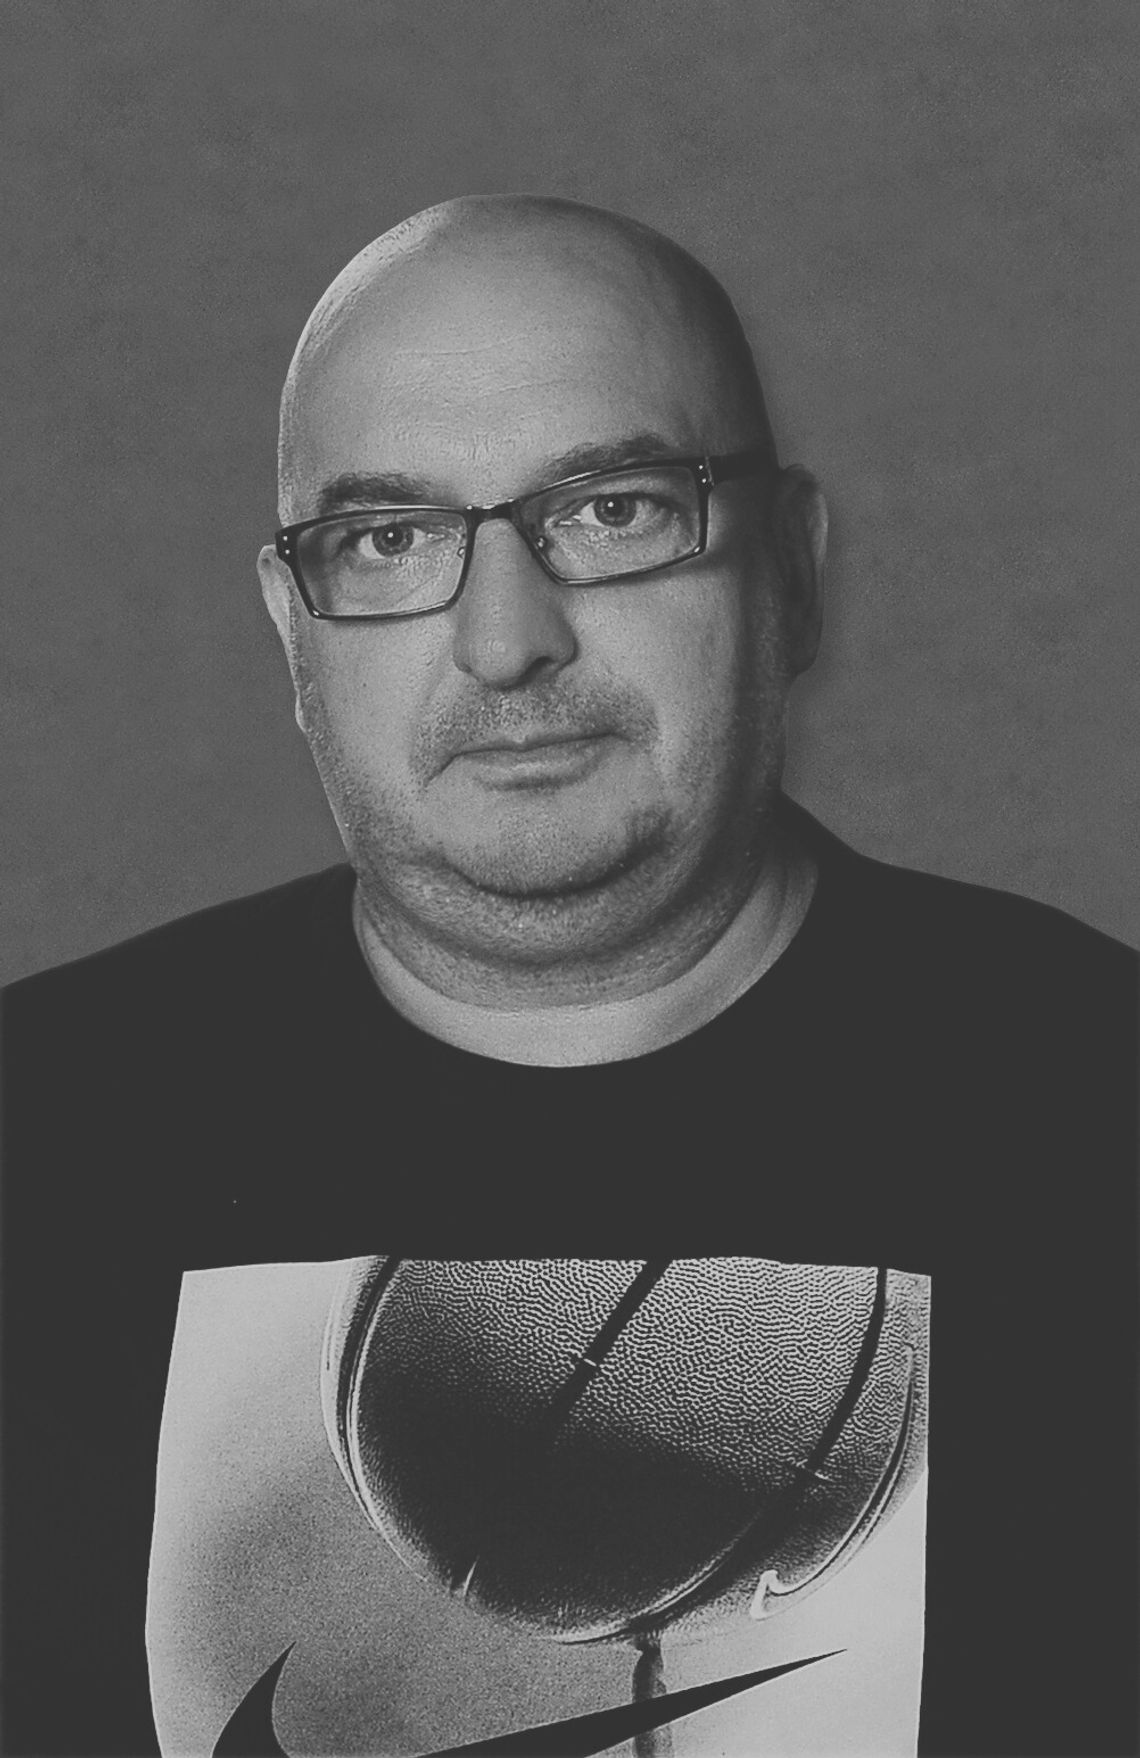 Wczoraj (12.12.) dowiedzieliśmy się o śmierci naszego kolegi Jacka Sałaputy, dziennikarza i wydawcy Muzycznego Radia.